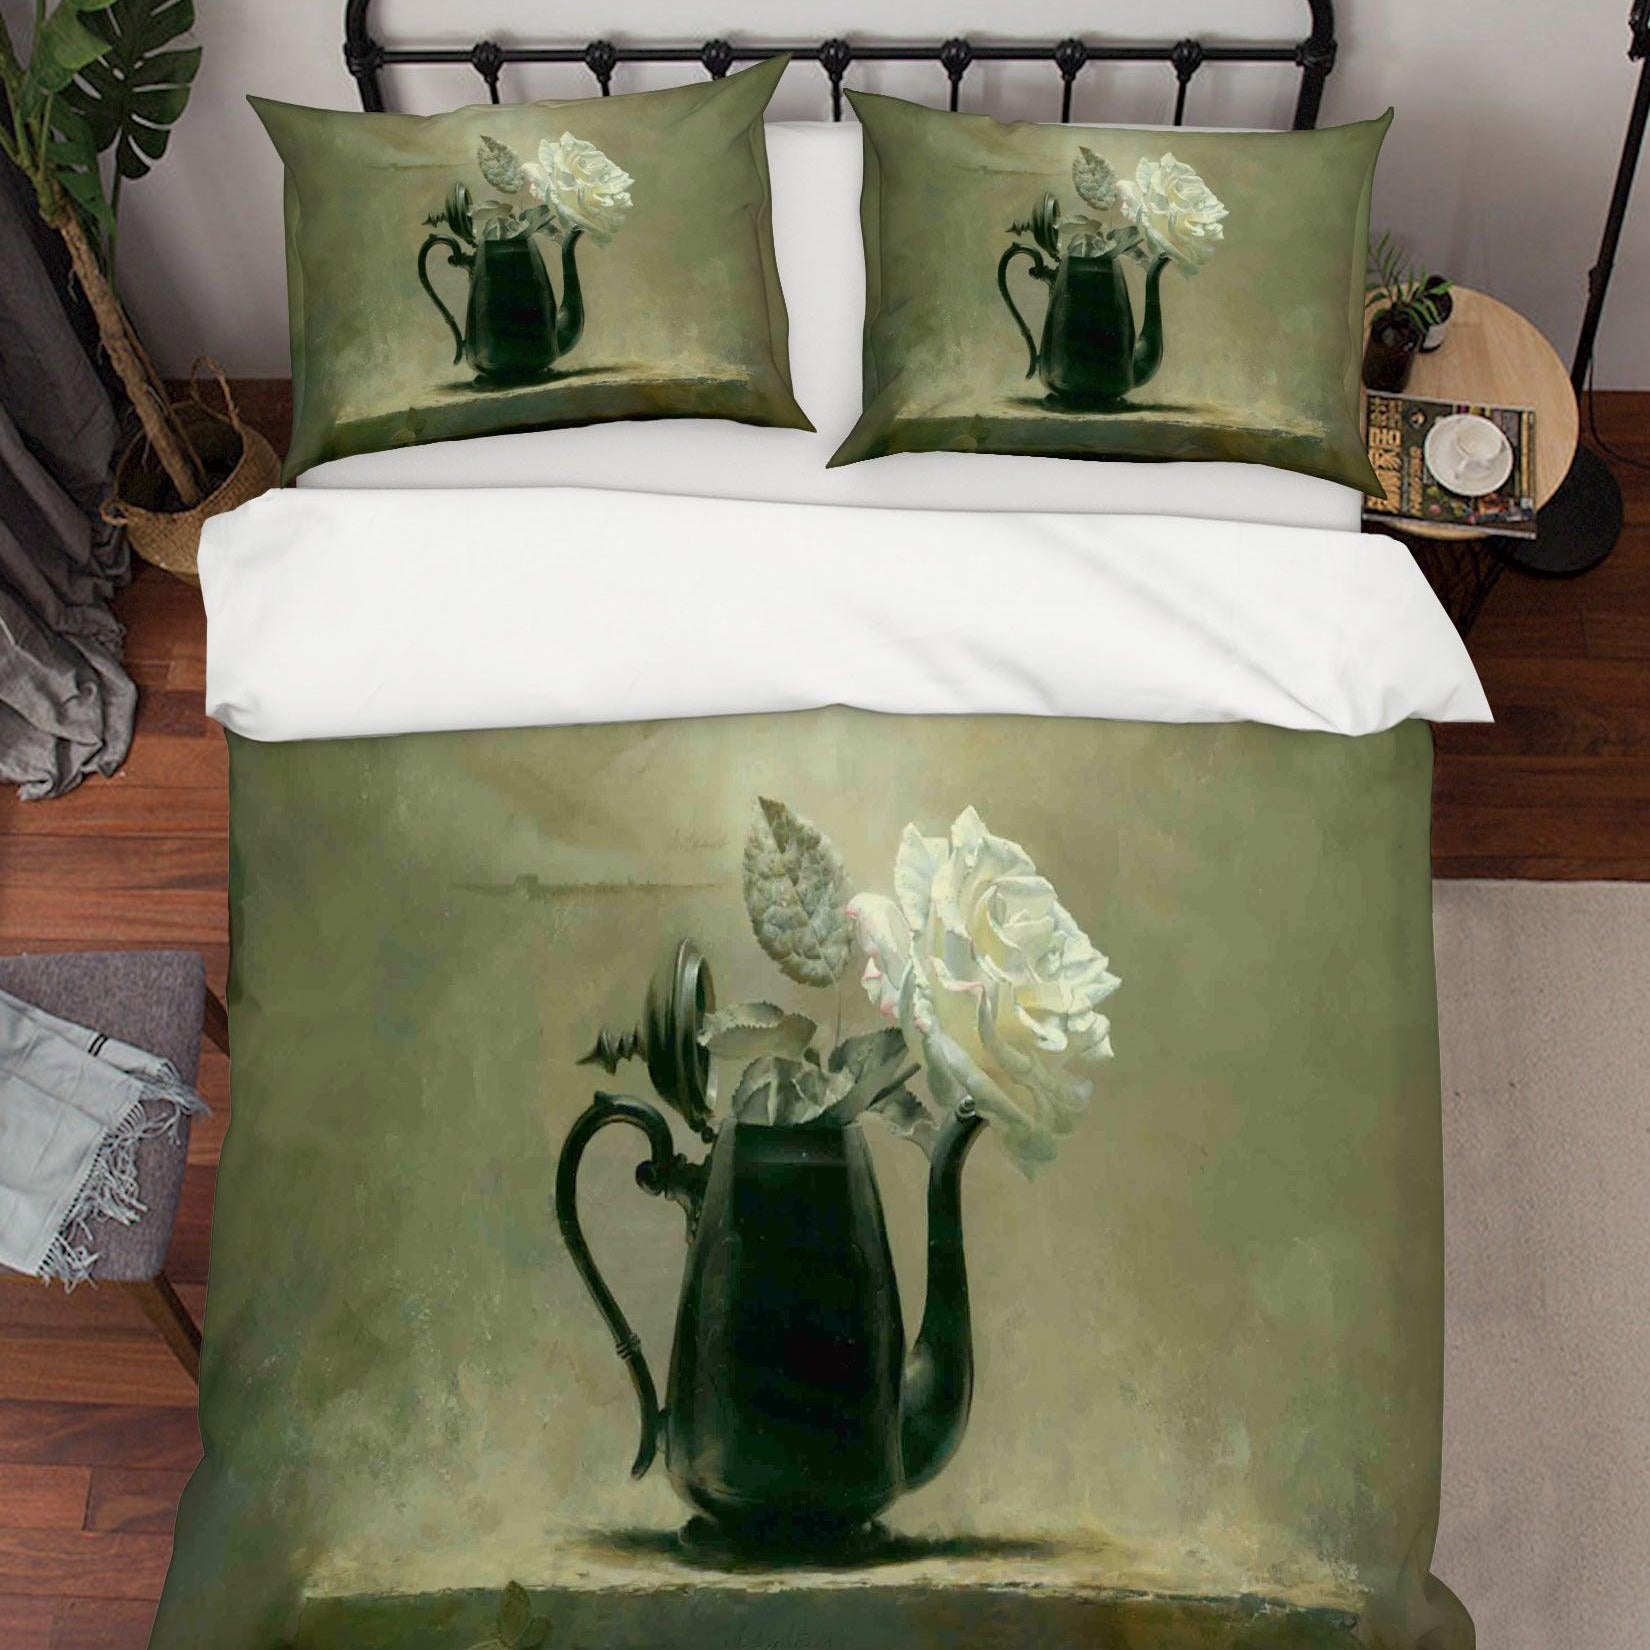 3D White Floral Teapot Quilt Cover Set Bedding Set Pillowcases 83- Jess Art Decoration